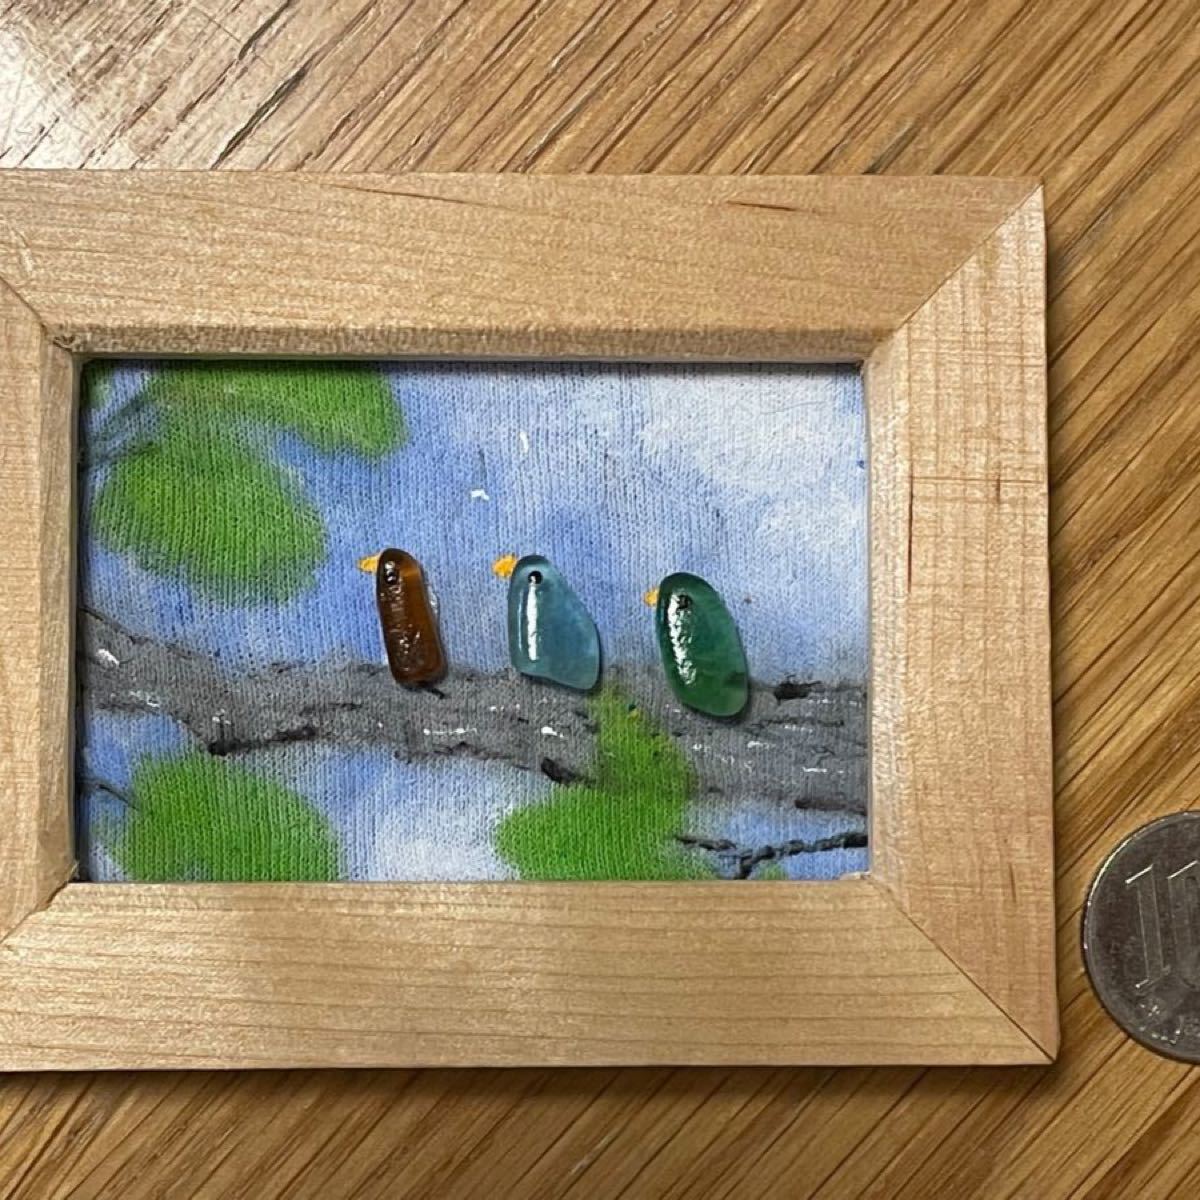 シーグラスアート　no.133   仲良しにゃんこ達と金魚、朝顔と鳥さん達